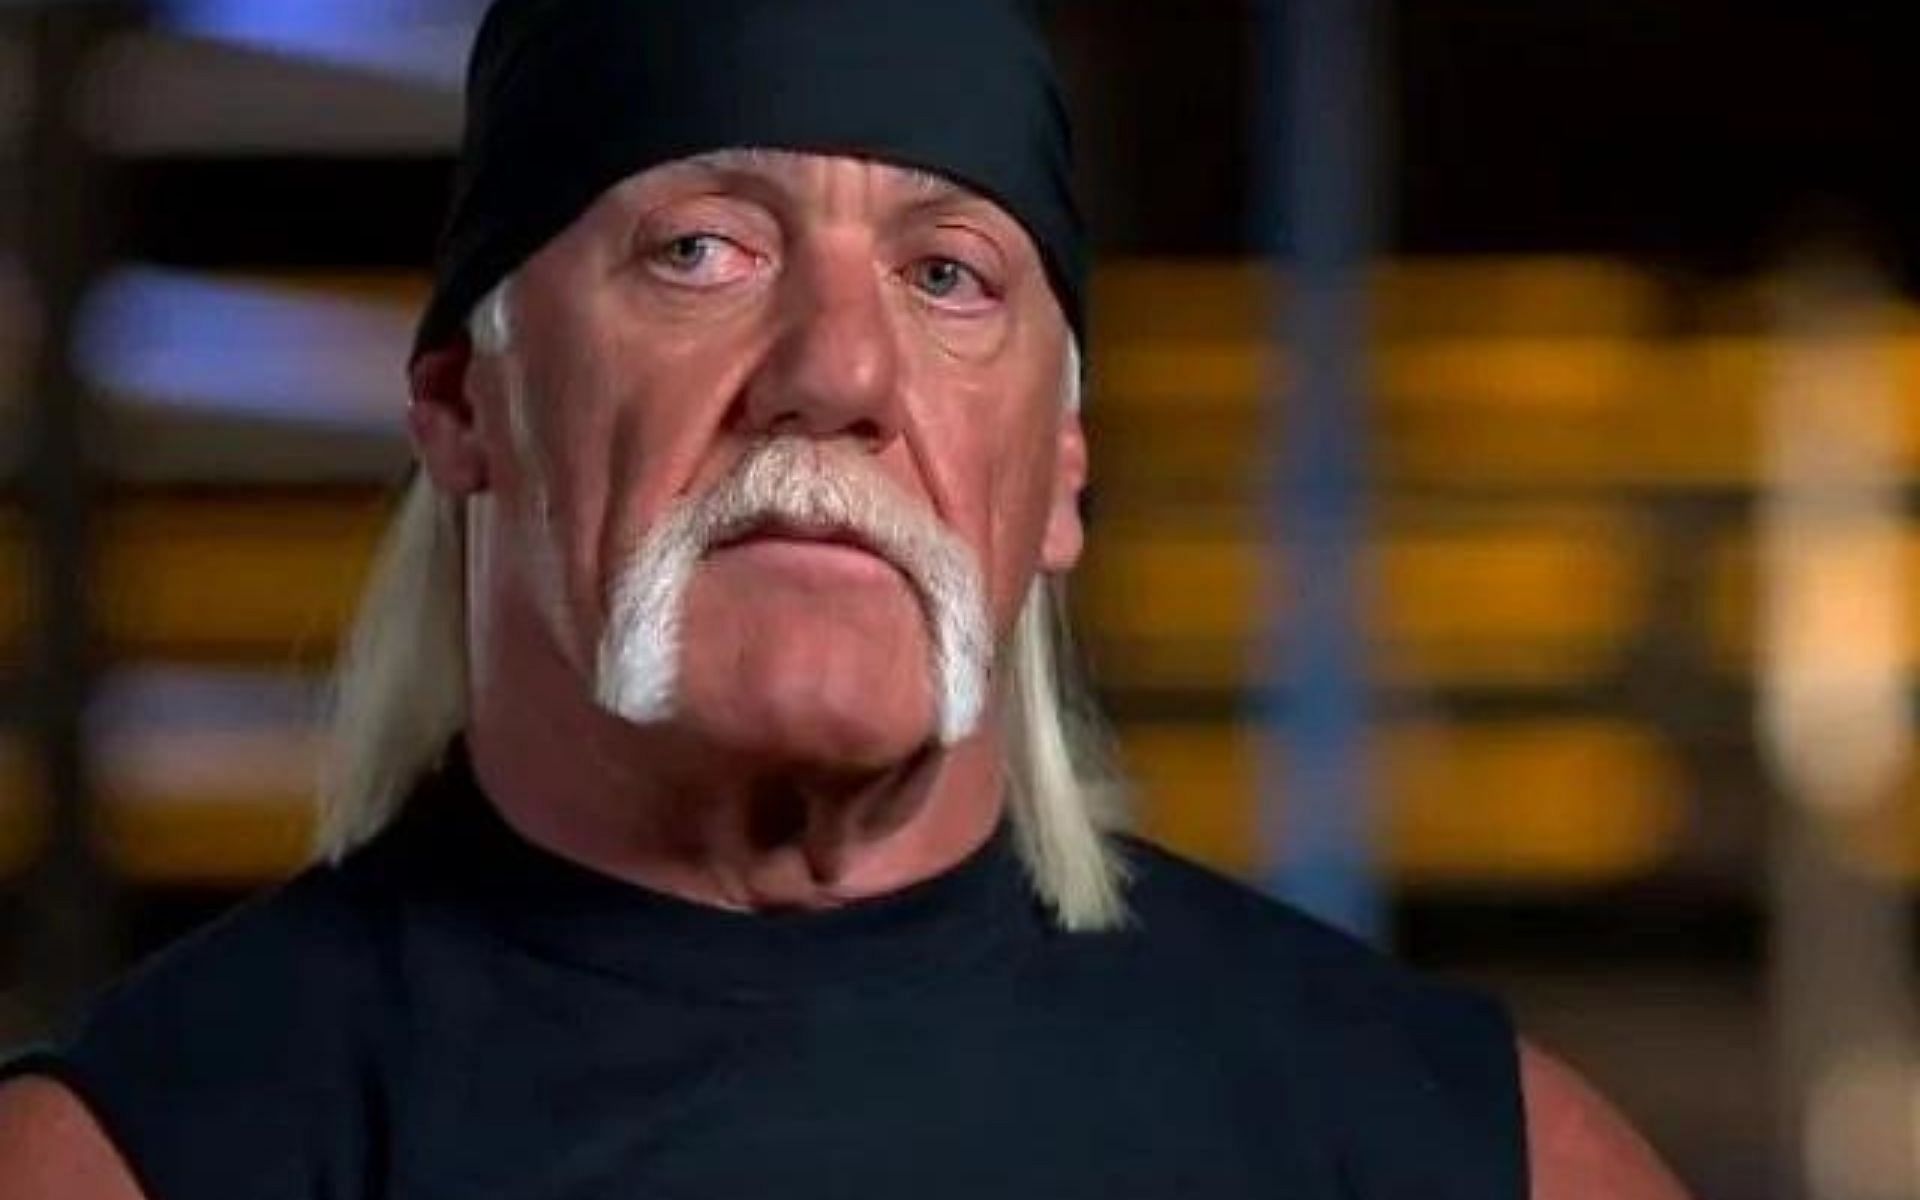 WWE Legend, The Immortal, Hulk Hogan